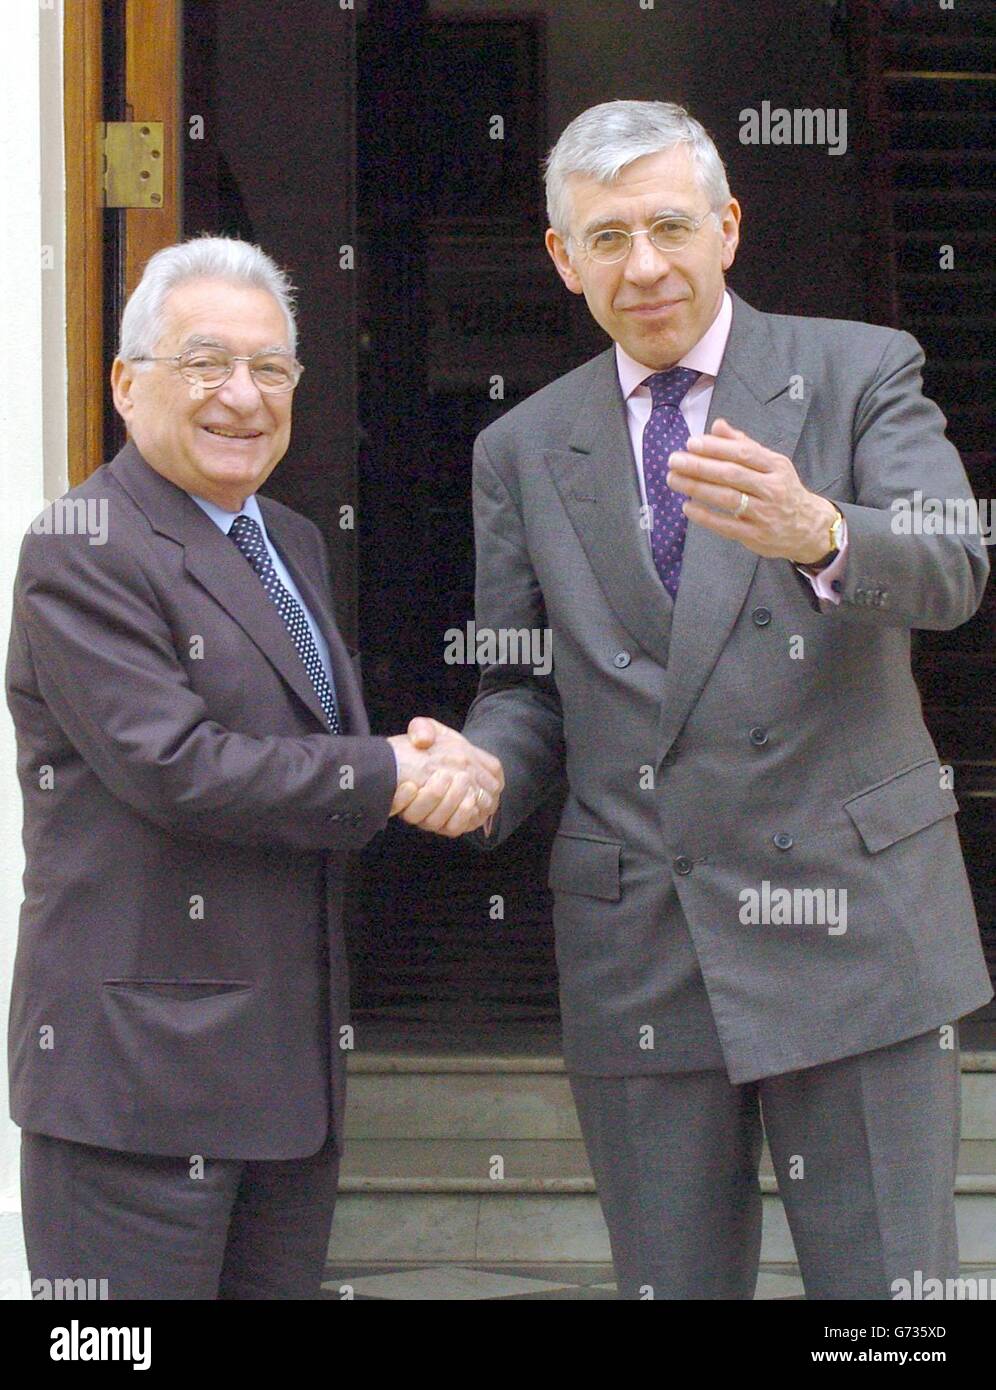 Der britische Außenminister Jack Straw (rechts) begrüßt seinen griechischen Amtskollegen Petros Molyviatis in seiner offiziellen Londoner Residenz, 1 Carlton Gardens in London. Stockfoto